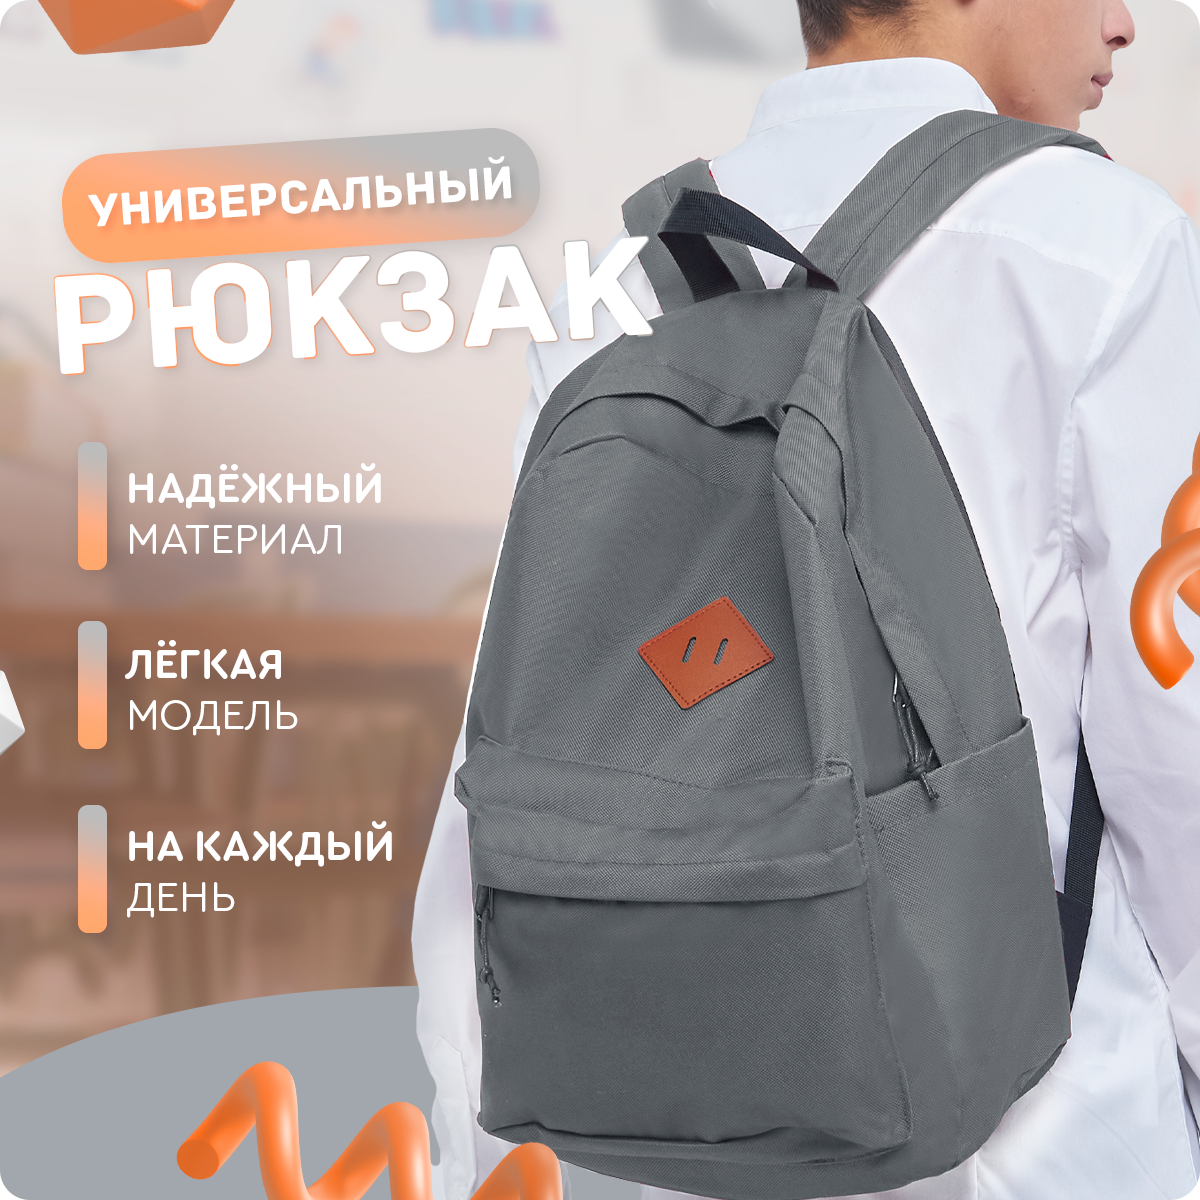 Рюкзак UrbanStorm городской спортивный туристический / сумка \ школьный для мальчиков девочек